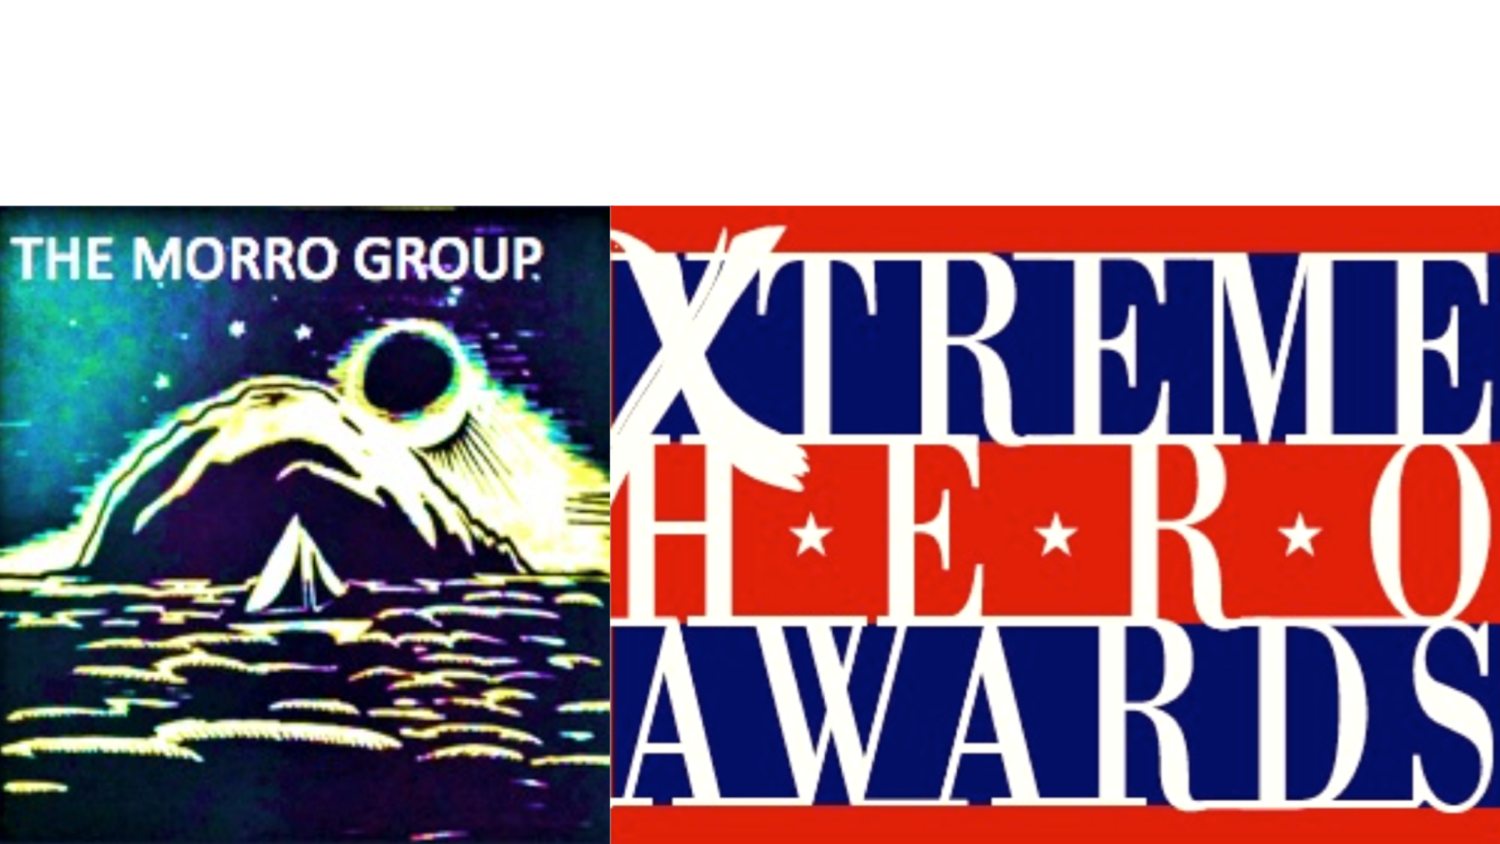 Xtreme Hero Awards